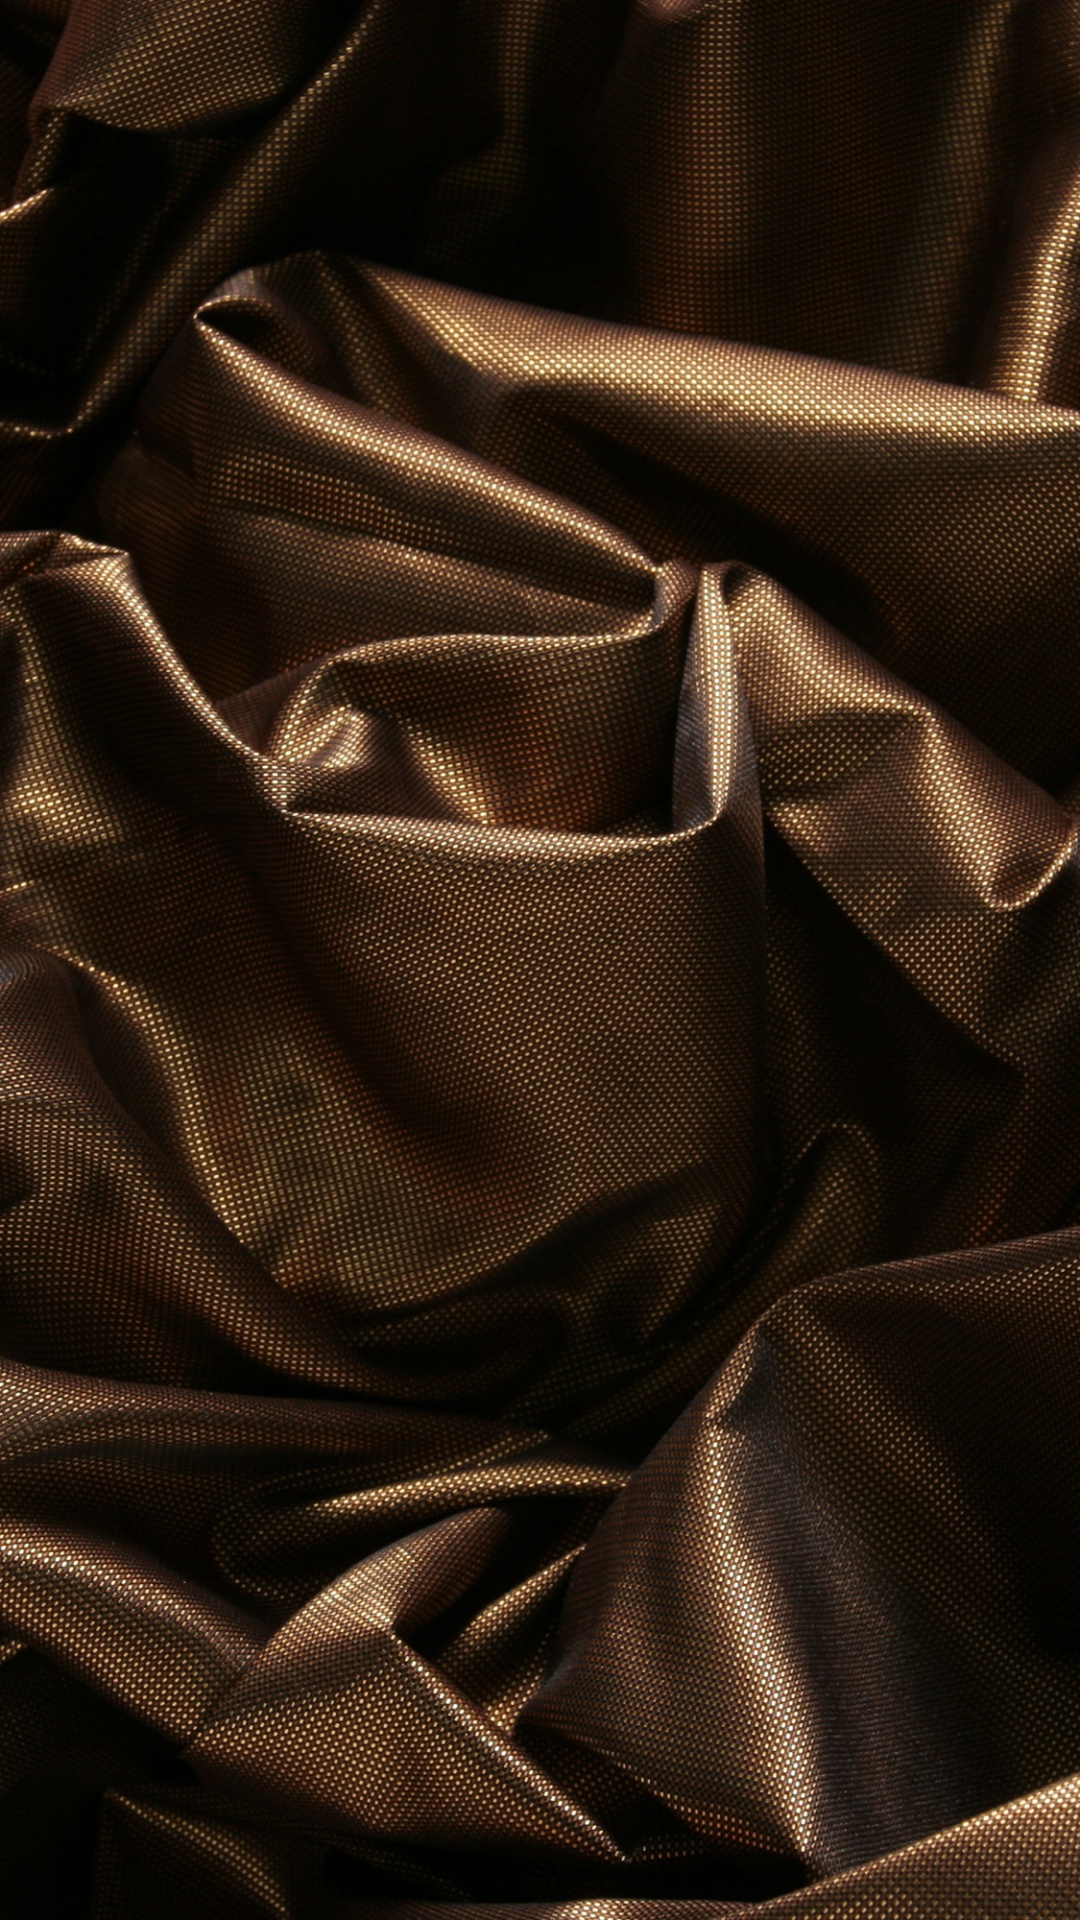 Textile Noir Sur Textile Blanc. Wallpaper in 1080x1920 Resolution